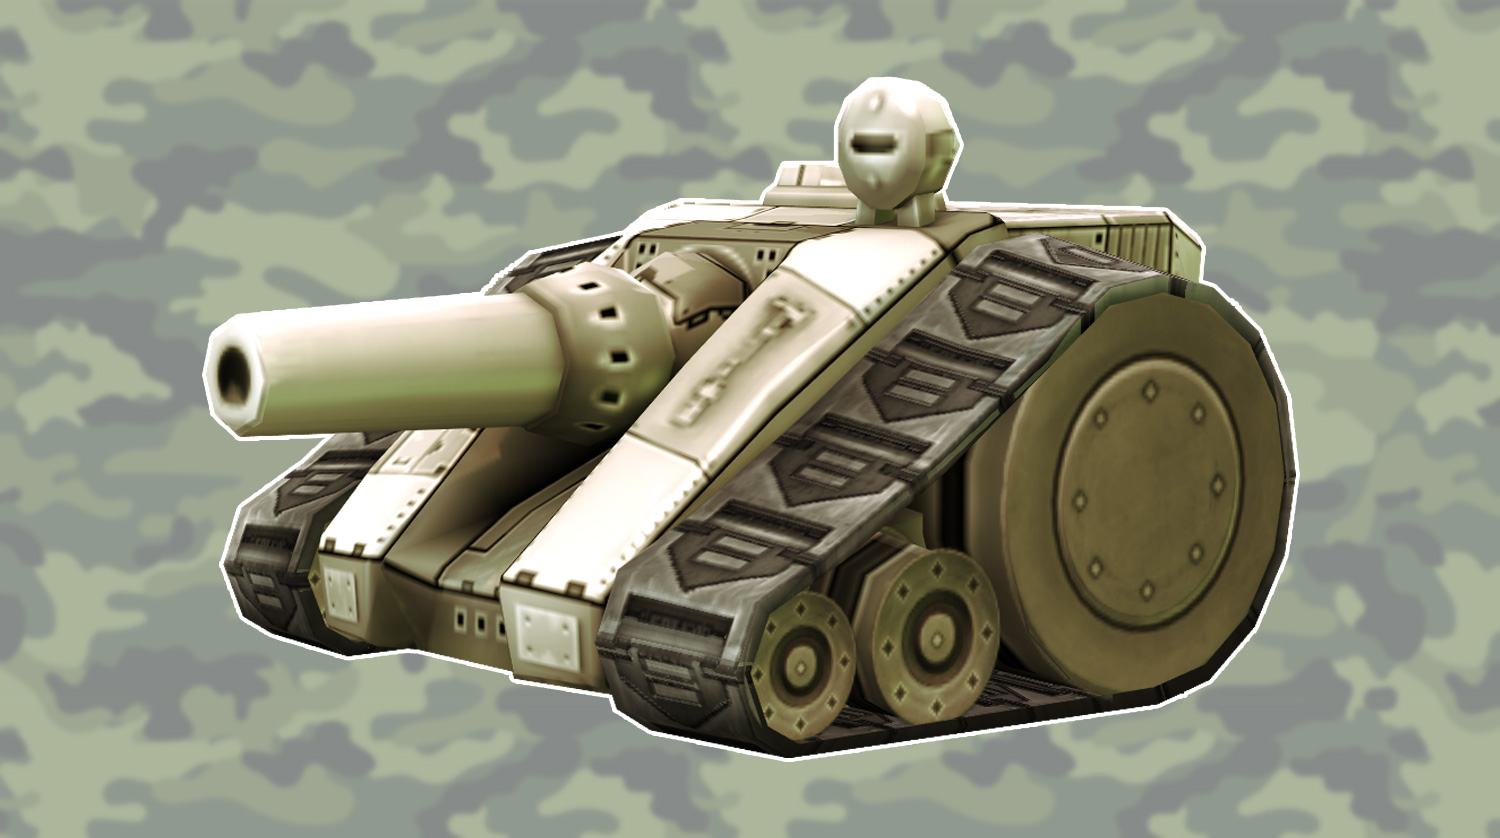 Tank Troopers, Aplicações de download da Nintendo 3DS, Jogos